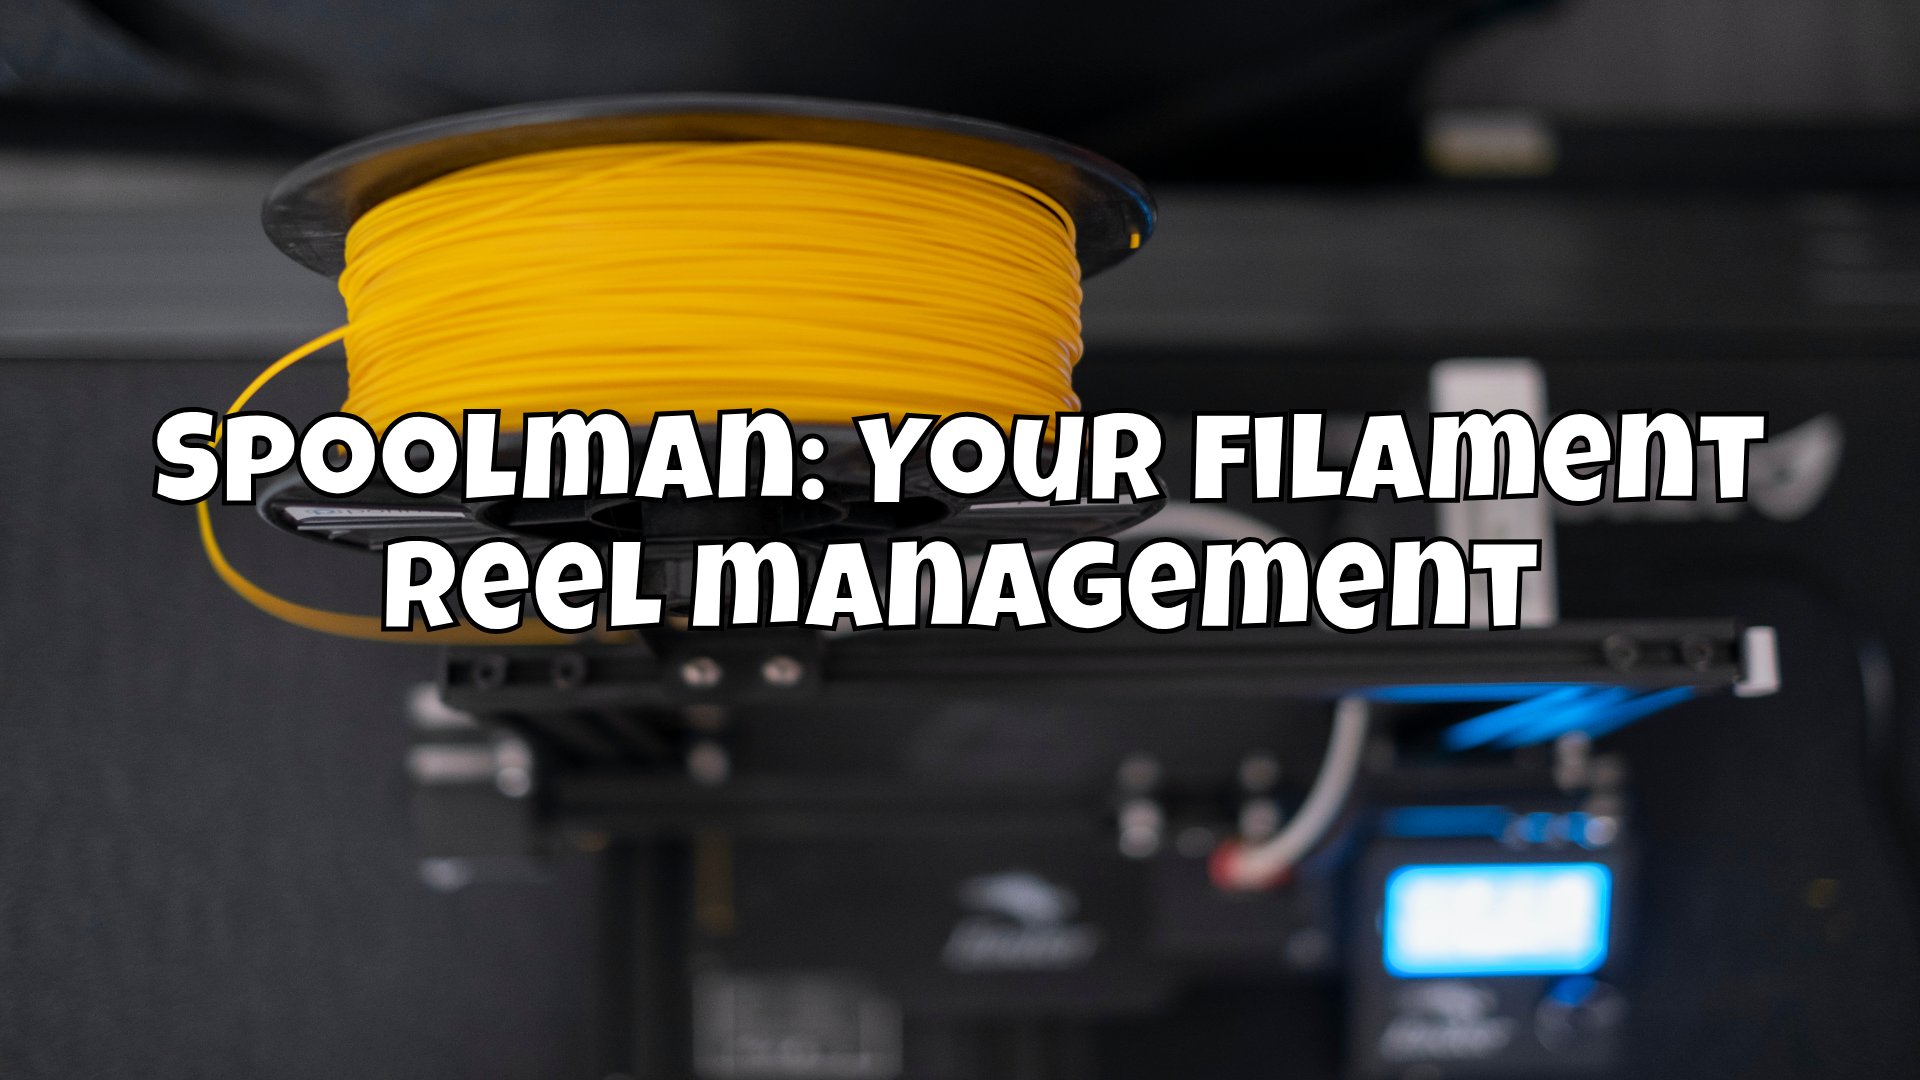 Spoolman: Your filament reel management